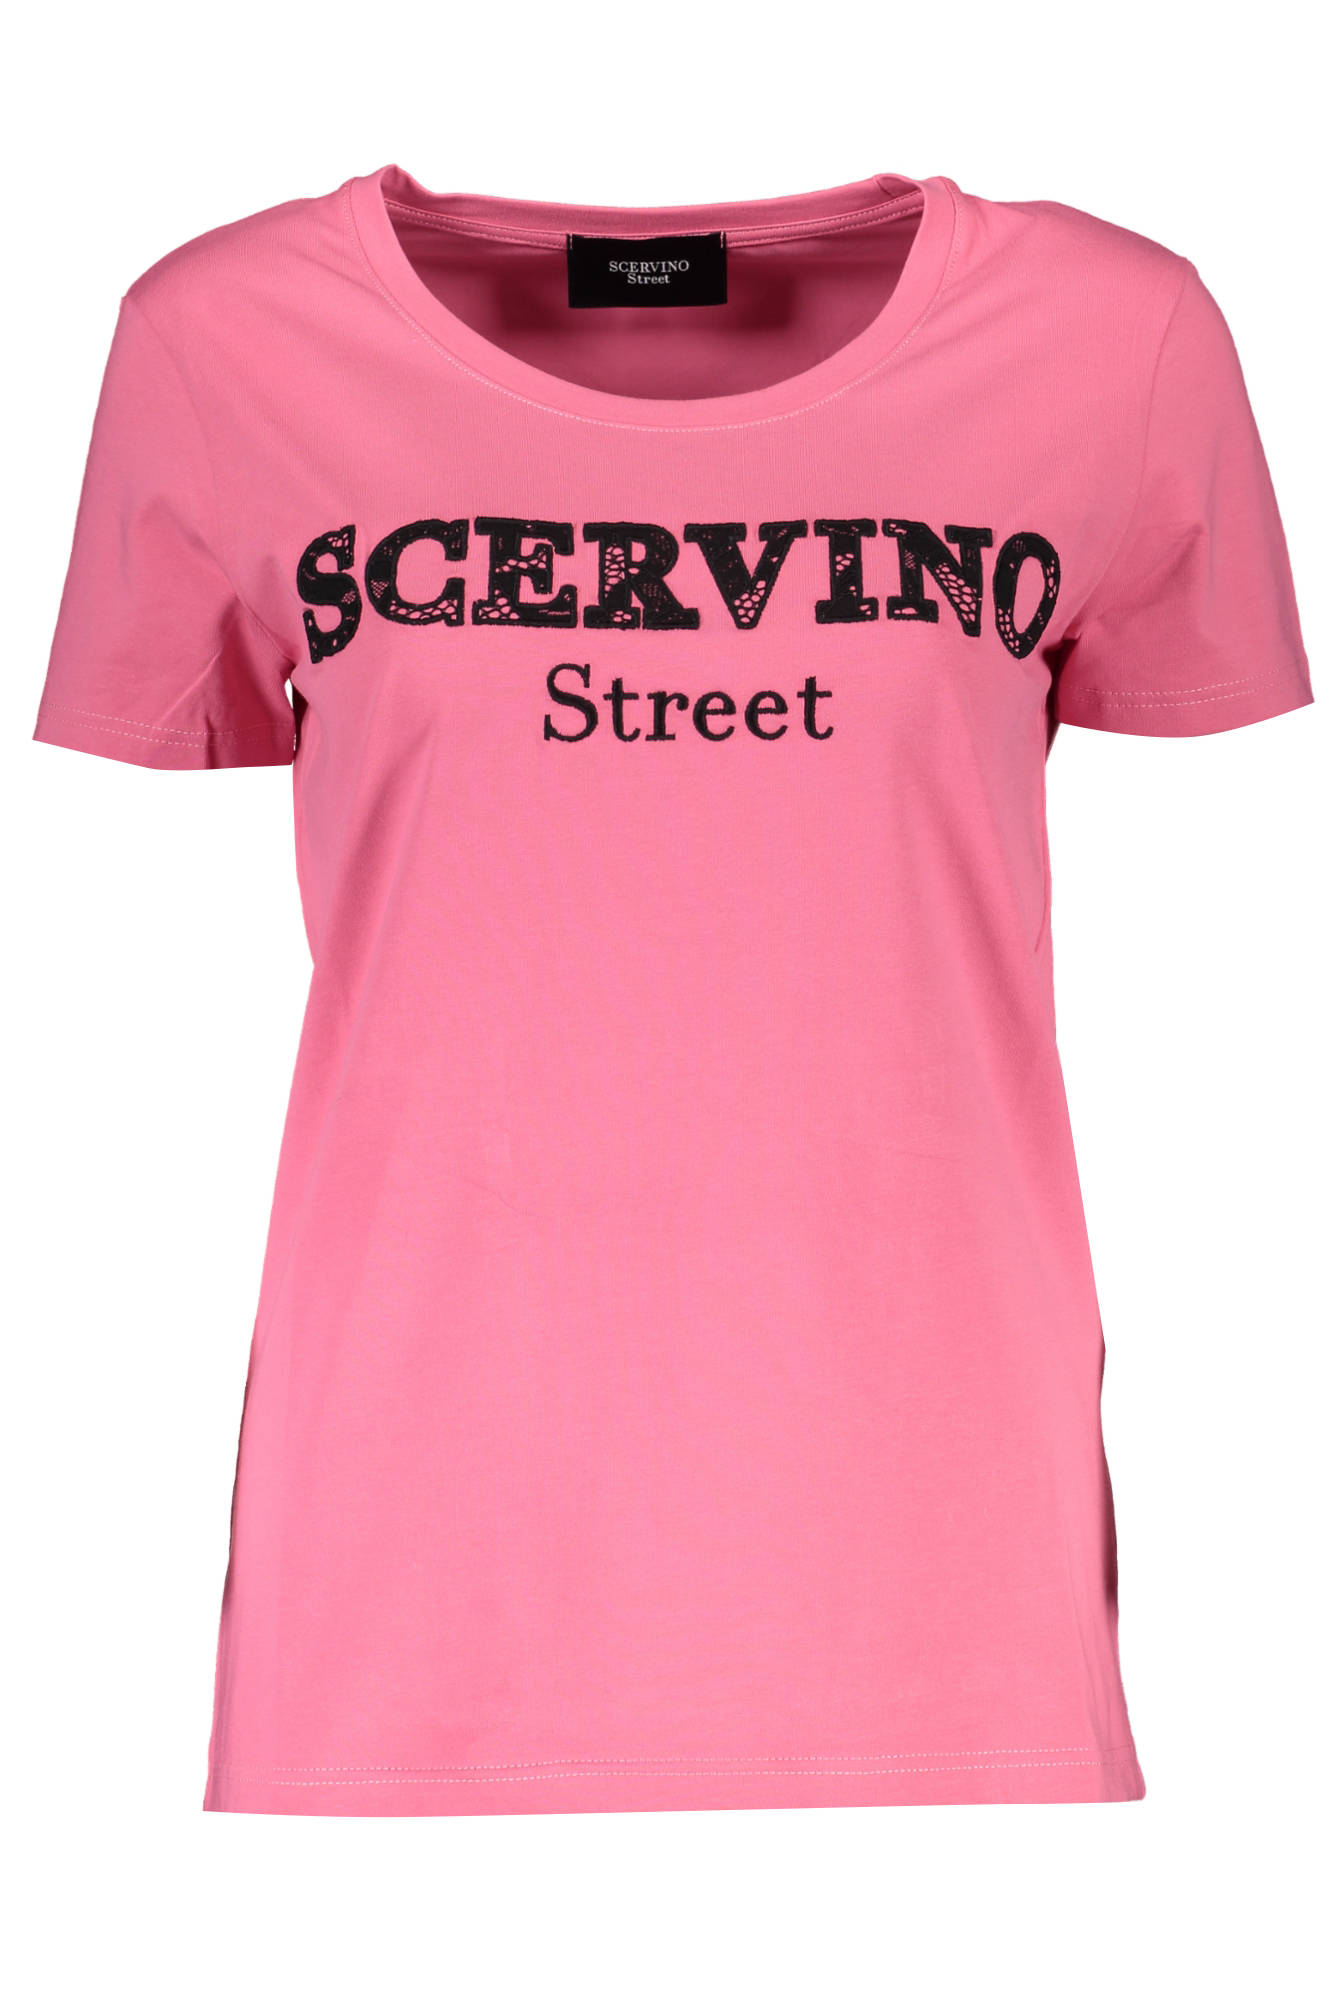 SCERVINO STREET tričko s krátkým rukávem ROSA